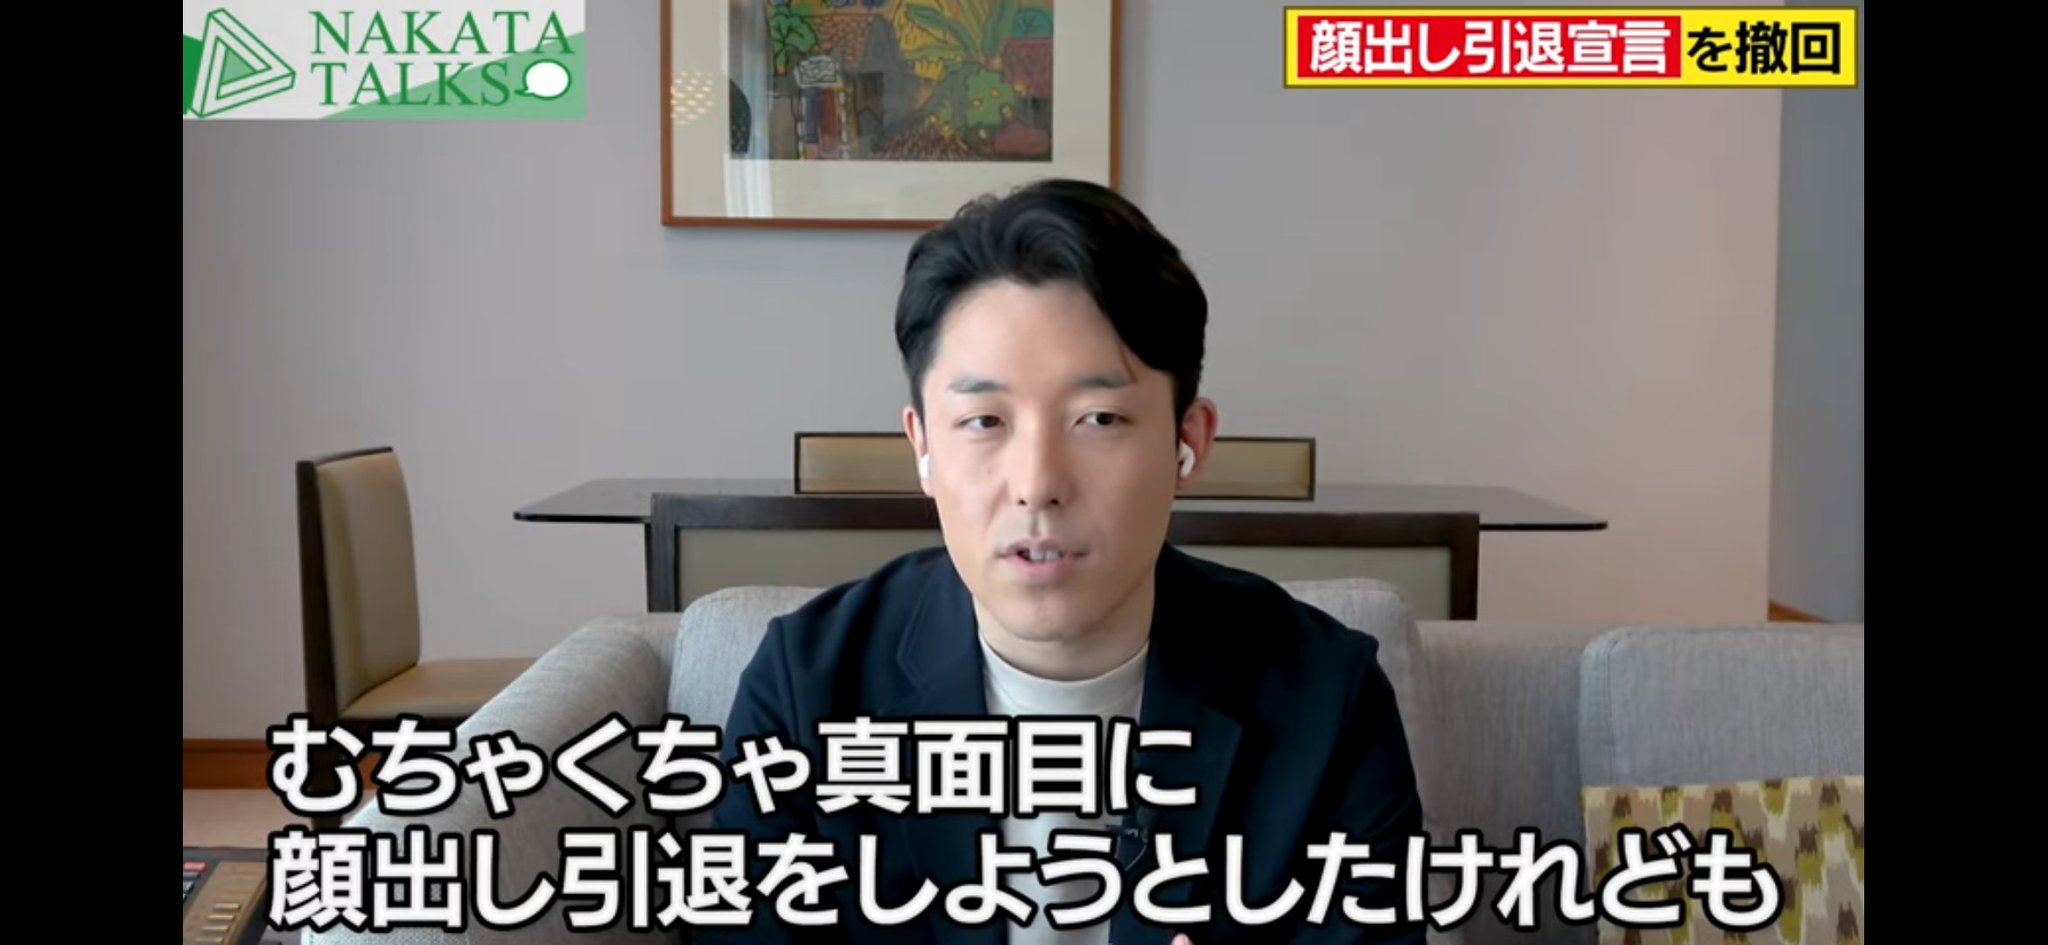 動画 顔出し引退宣言 した中田敦彦さんが顔出しで重大発表 Share News Japan